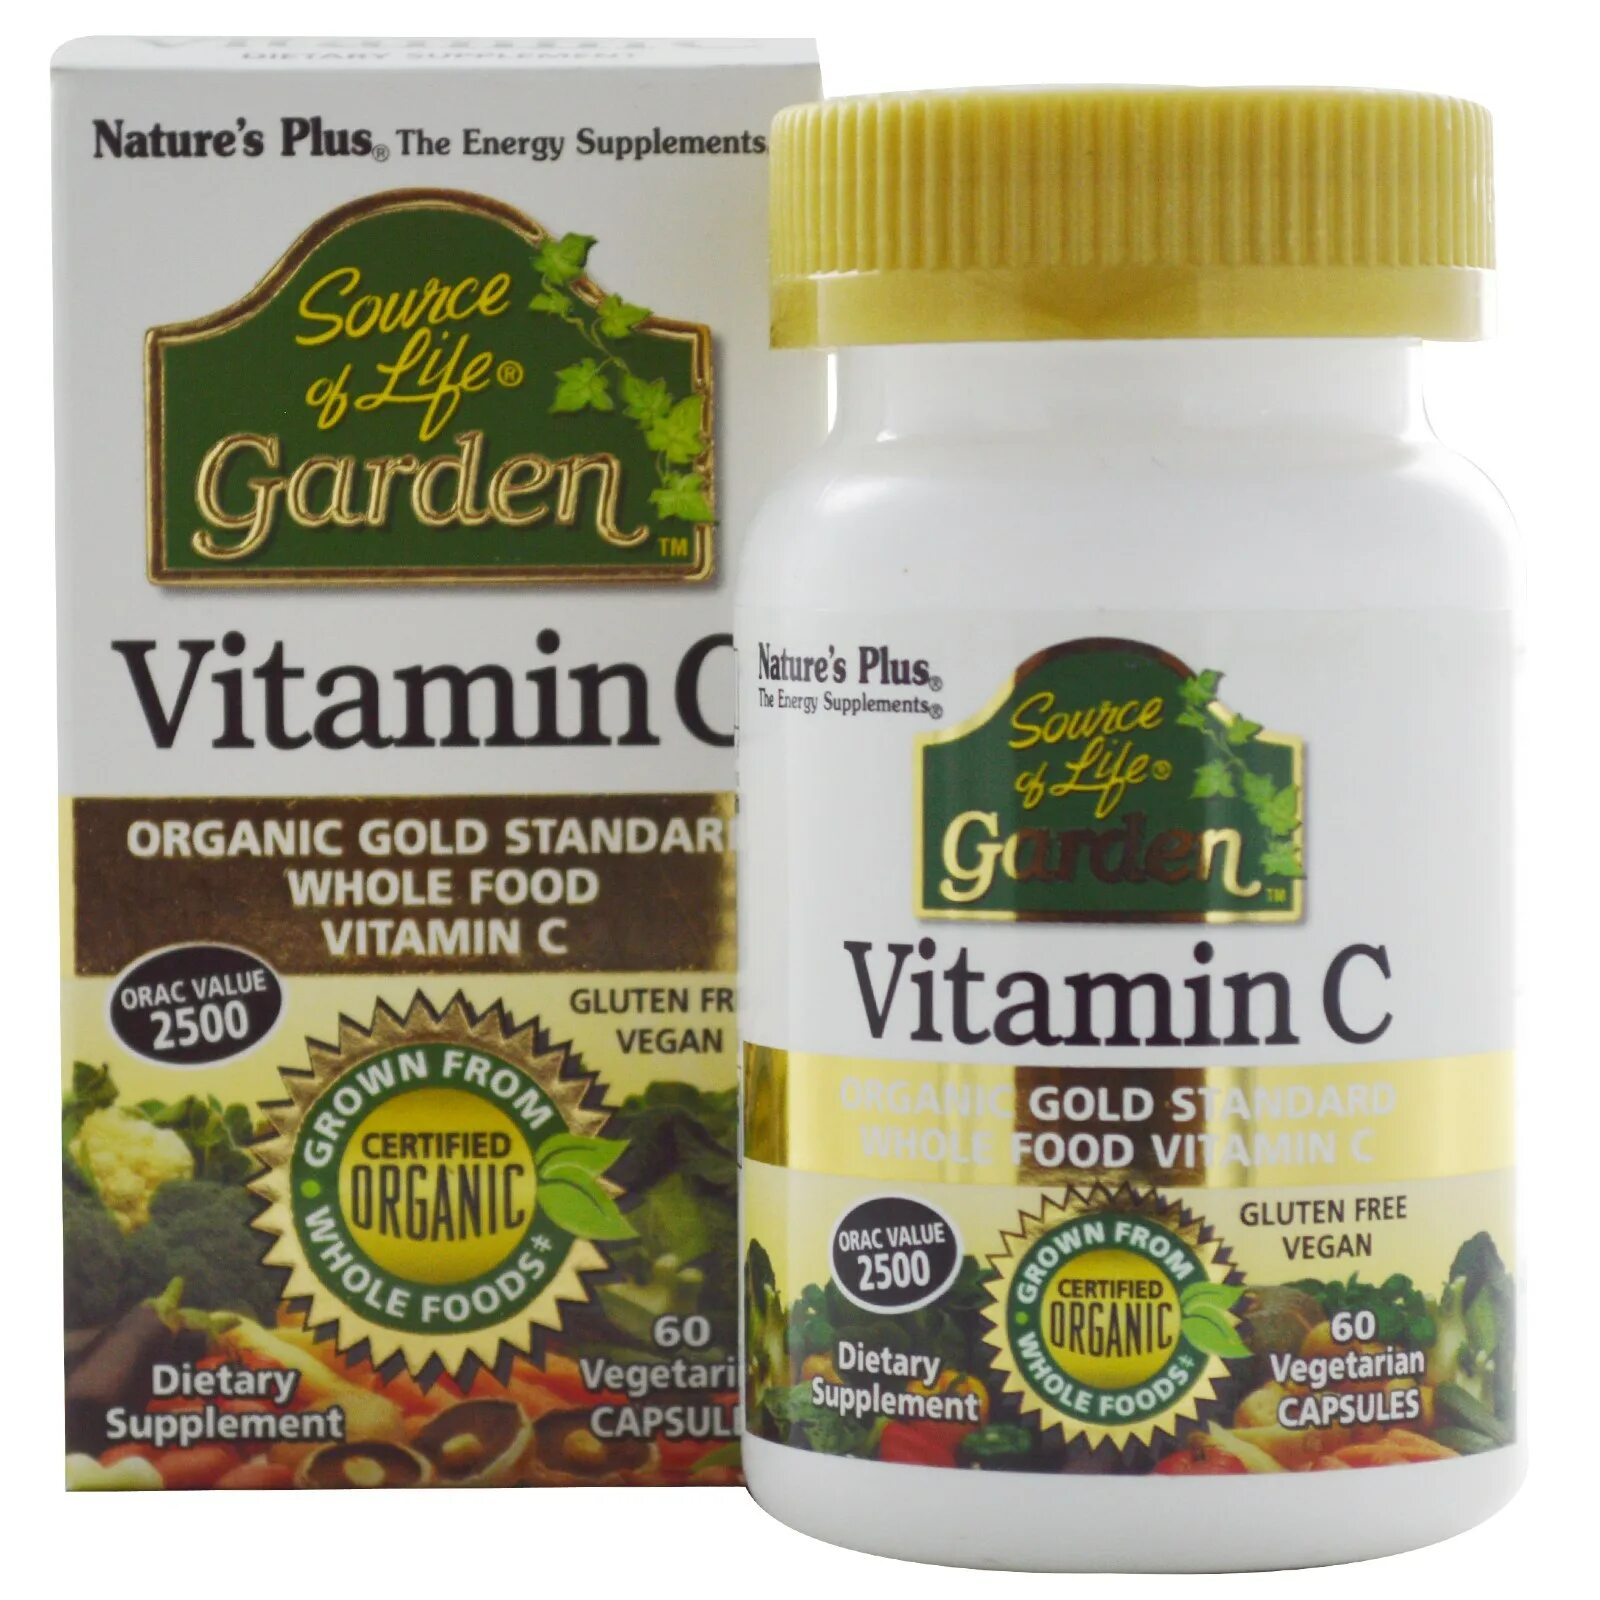 Nature's Plus vitamina c. Natures Plus Vitamin c. Витамины Garden. Гарден лайф витамины. Nature's plus витамины